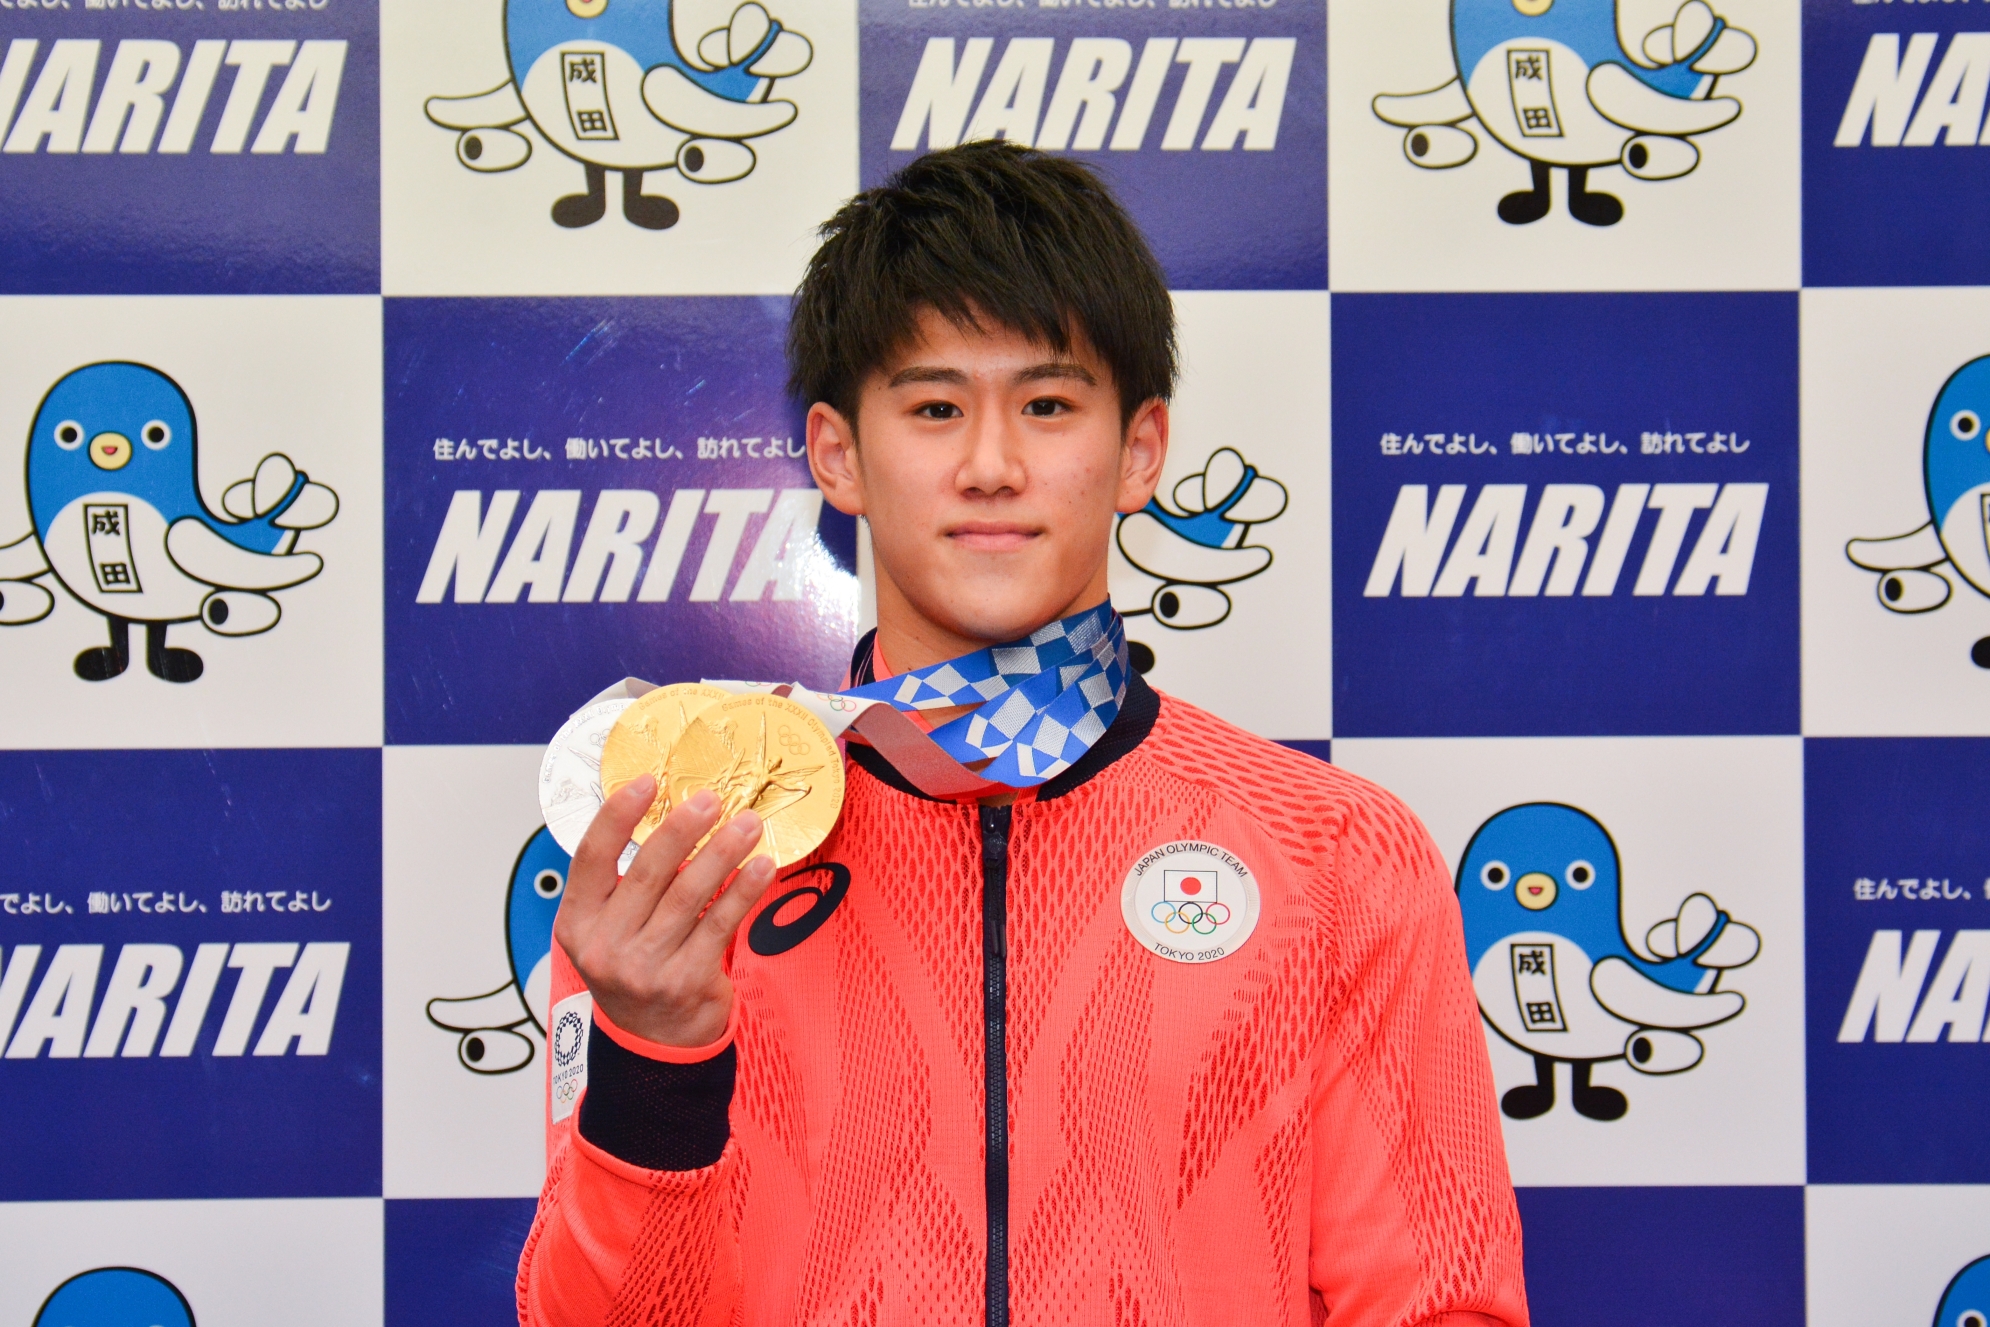 メダルを手にした橋本選手の写真